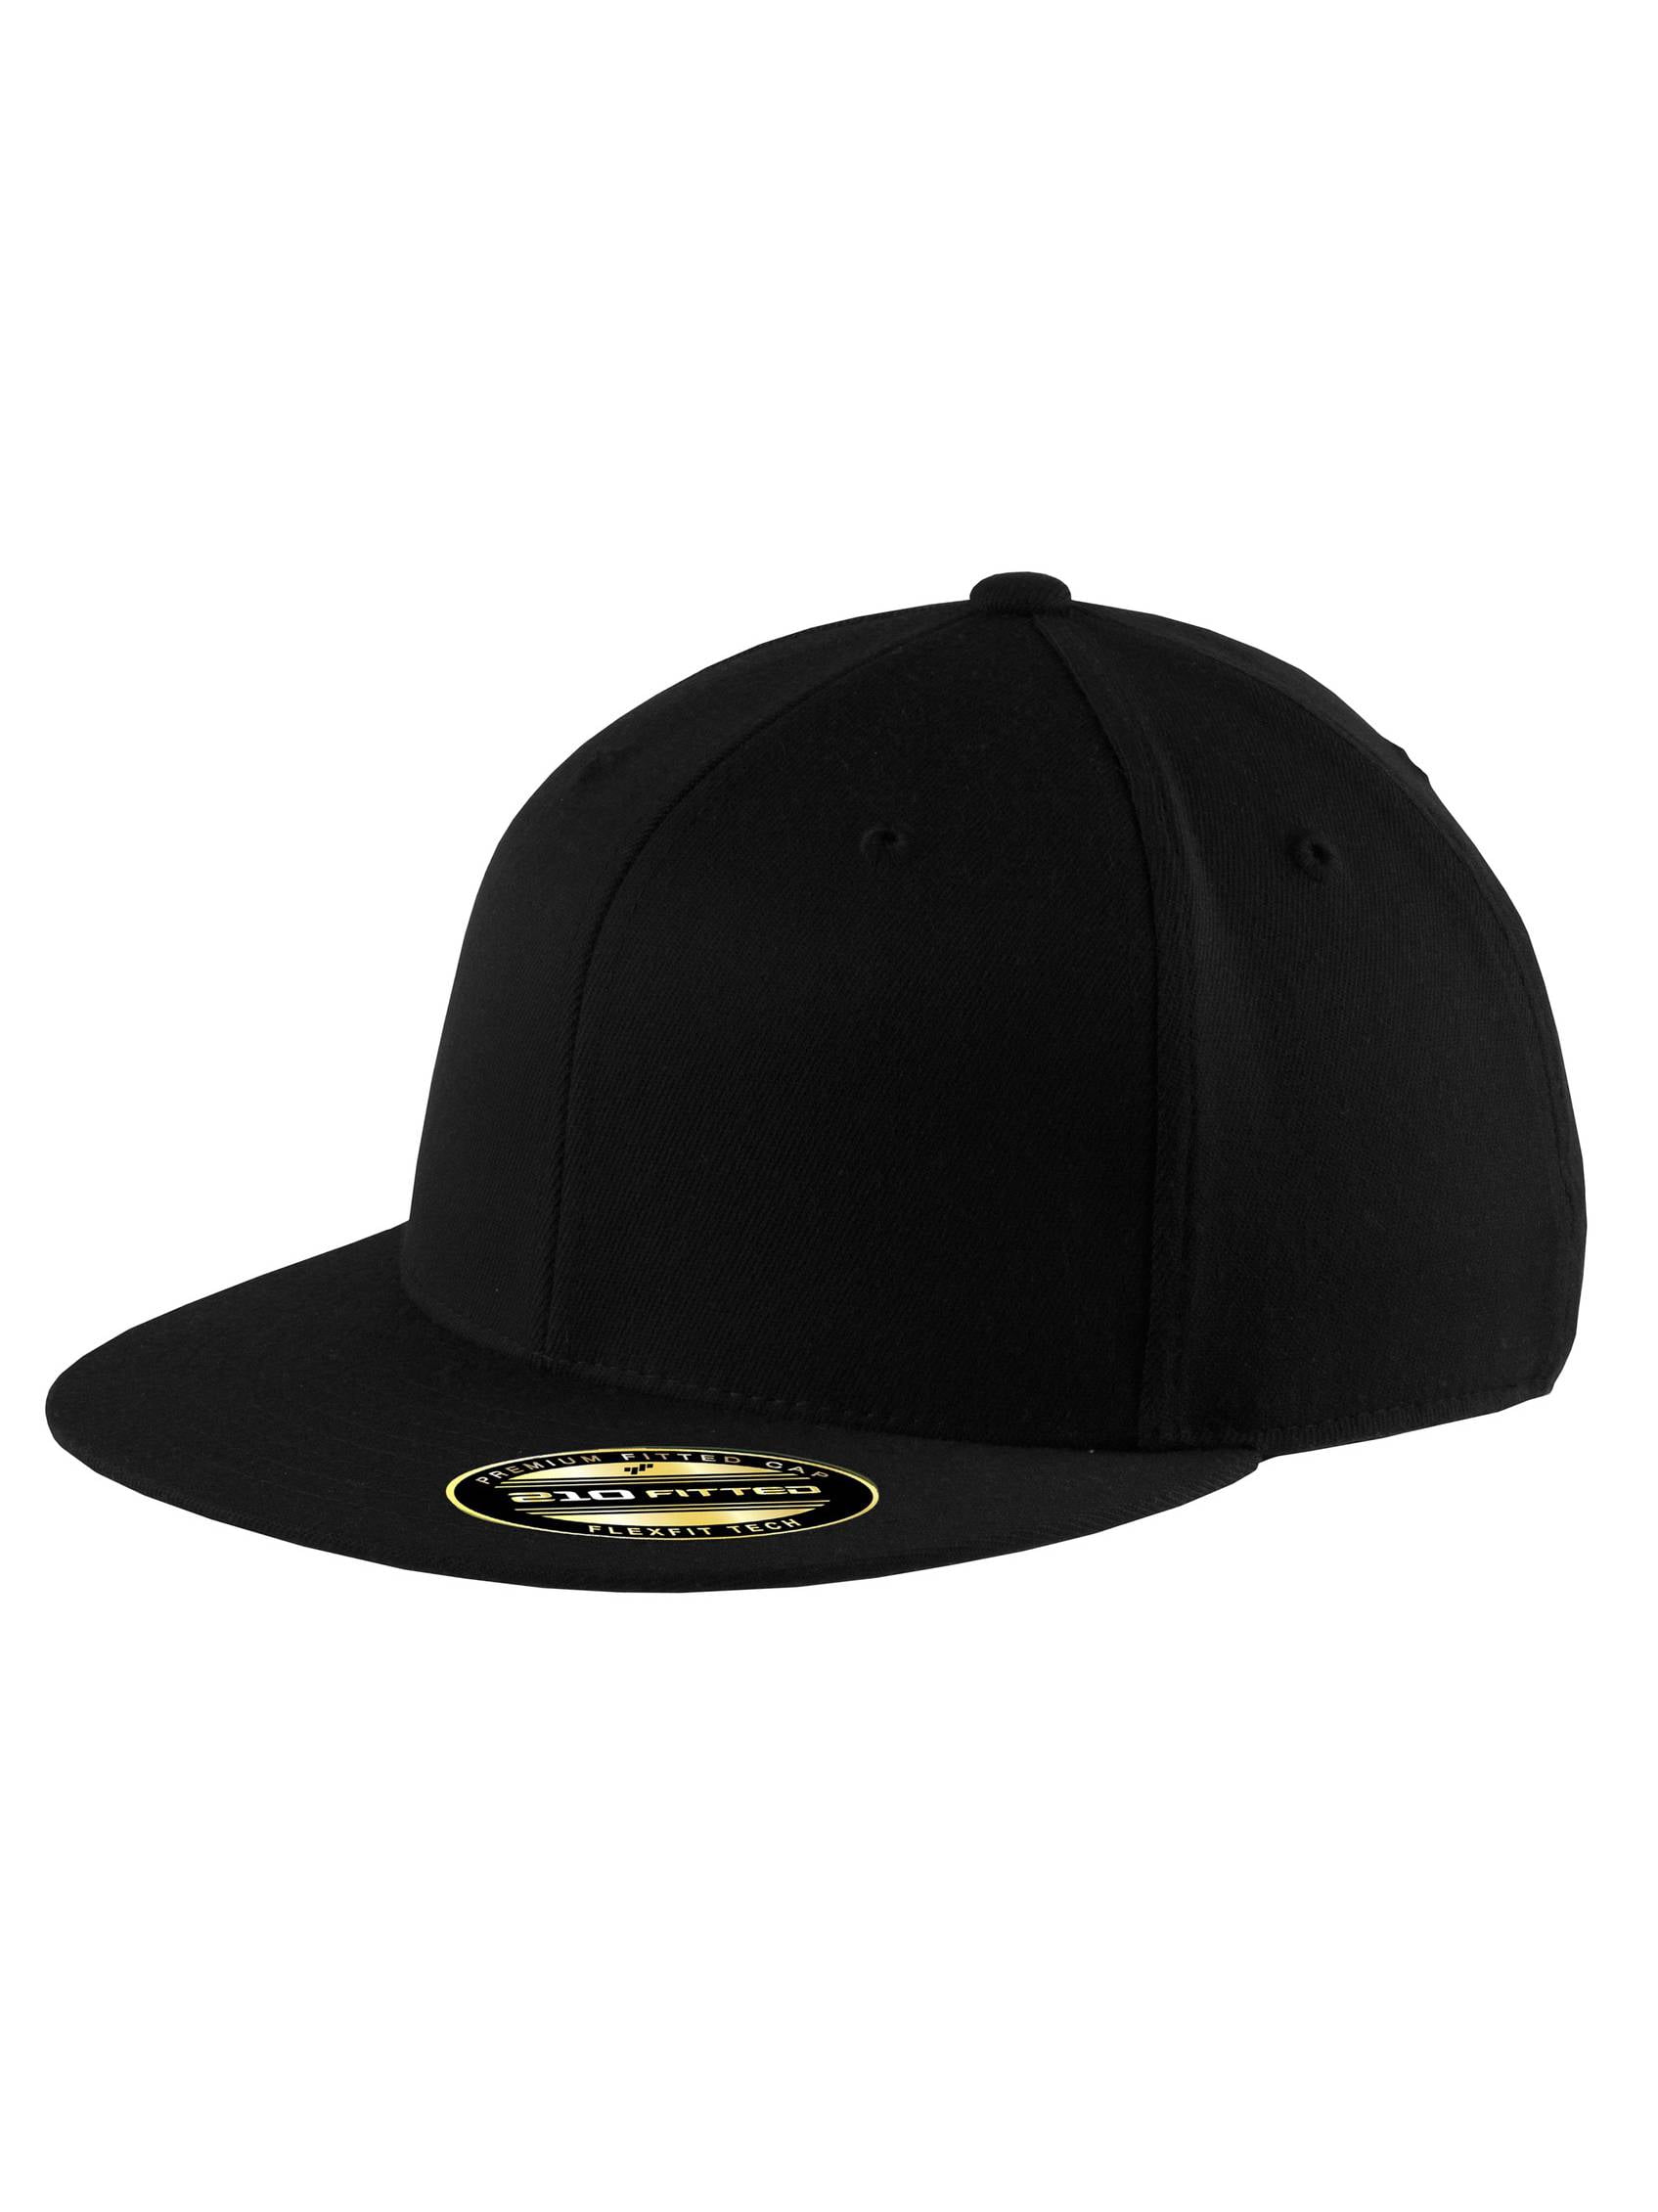 Top Headwear Flexible Flat Bill Cap - Black - Small/Medium